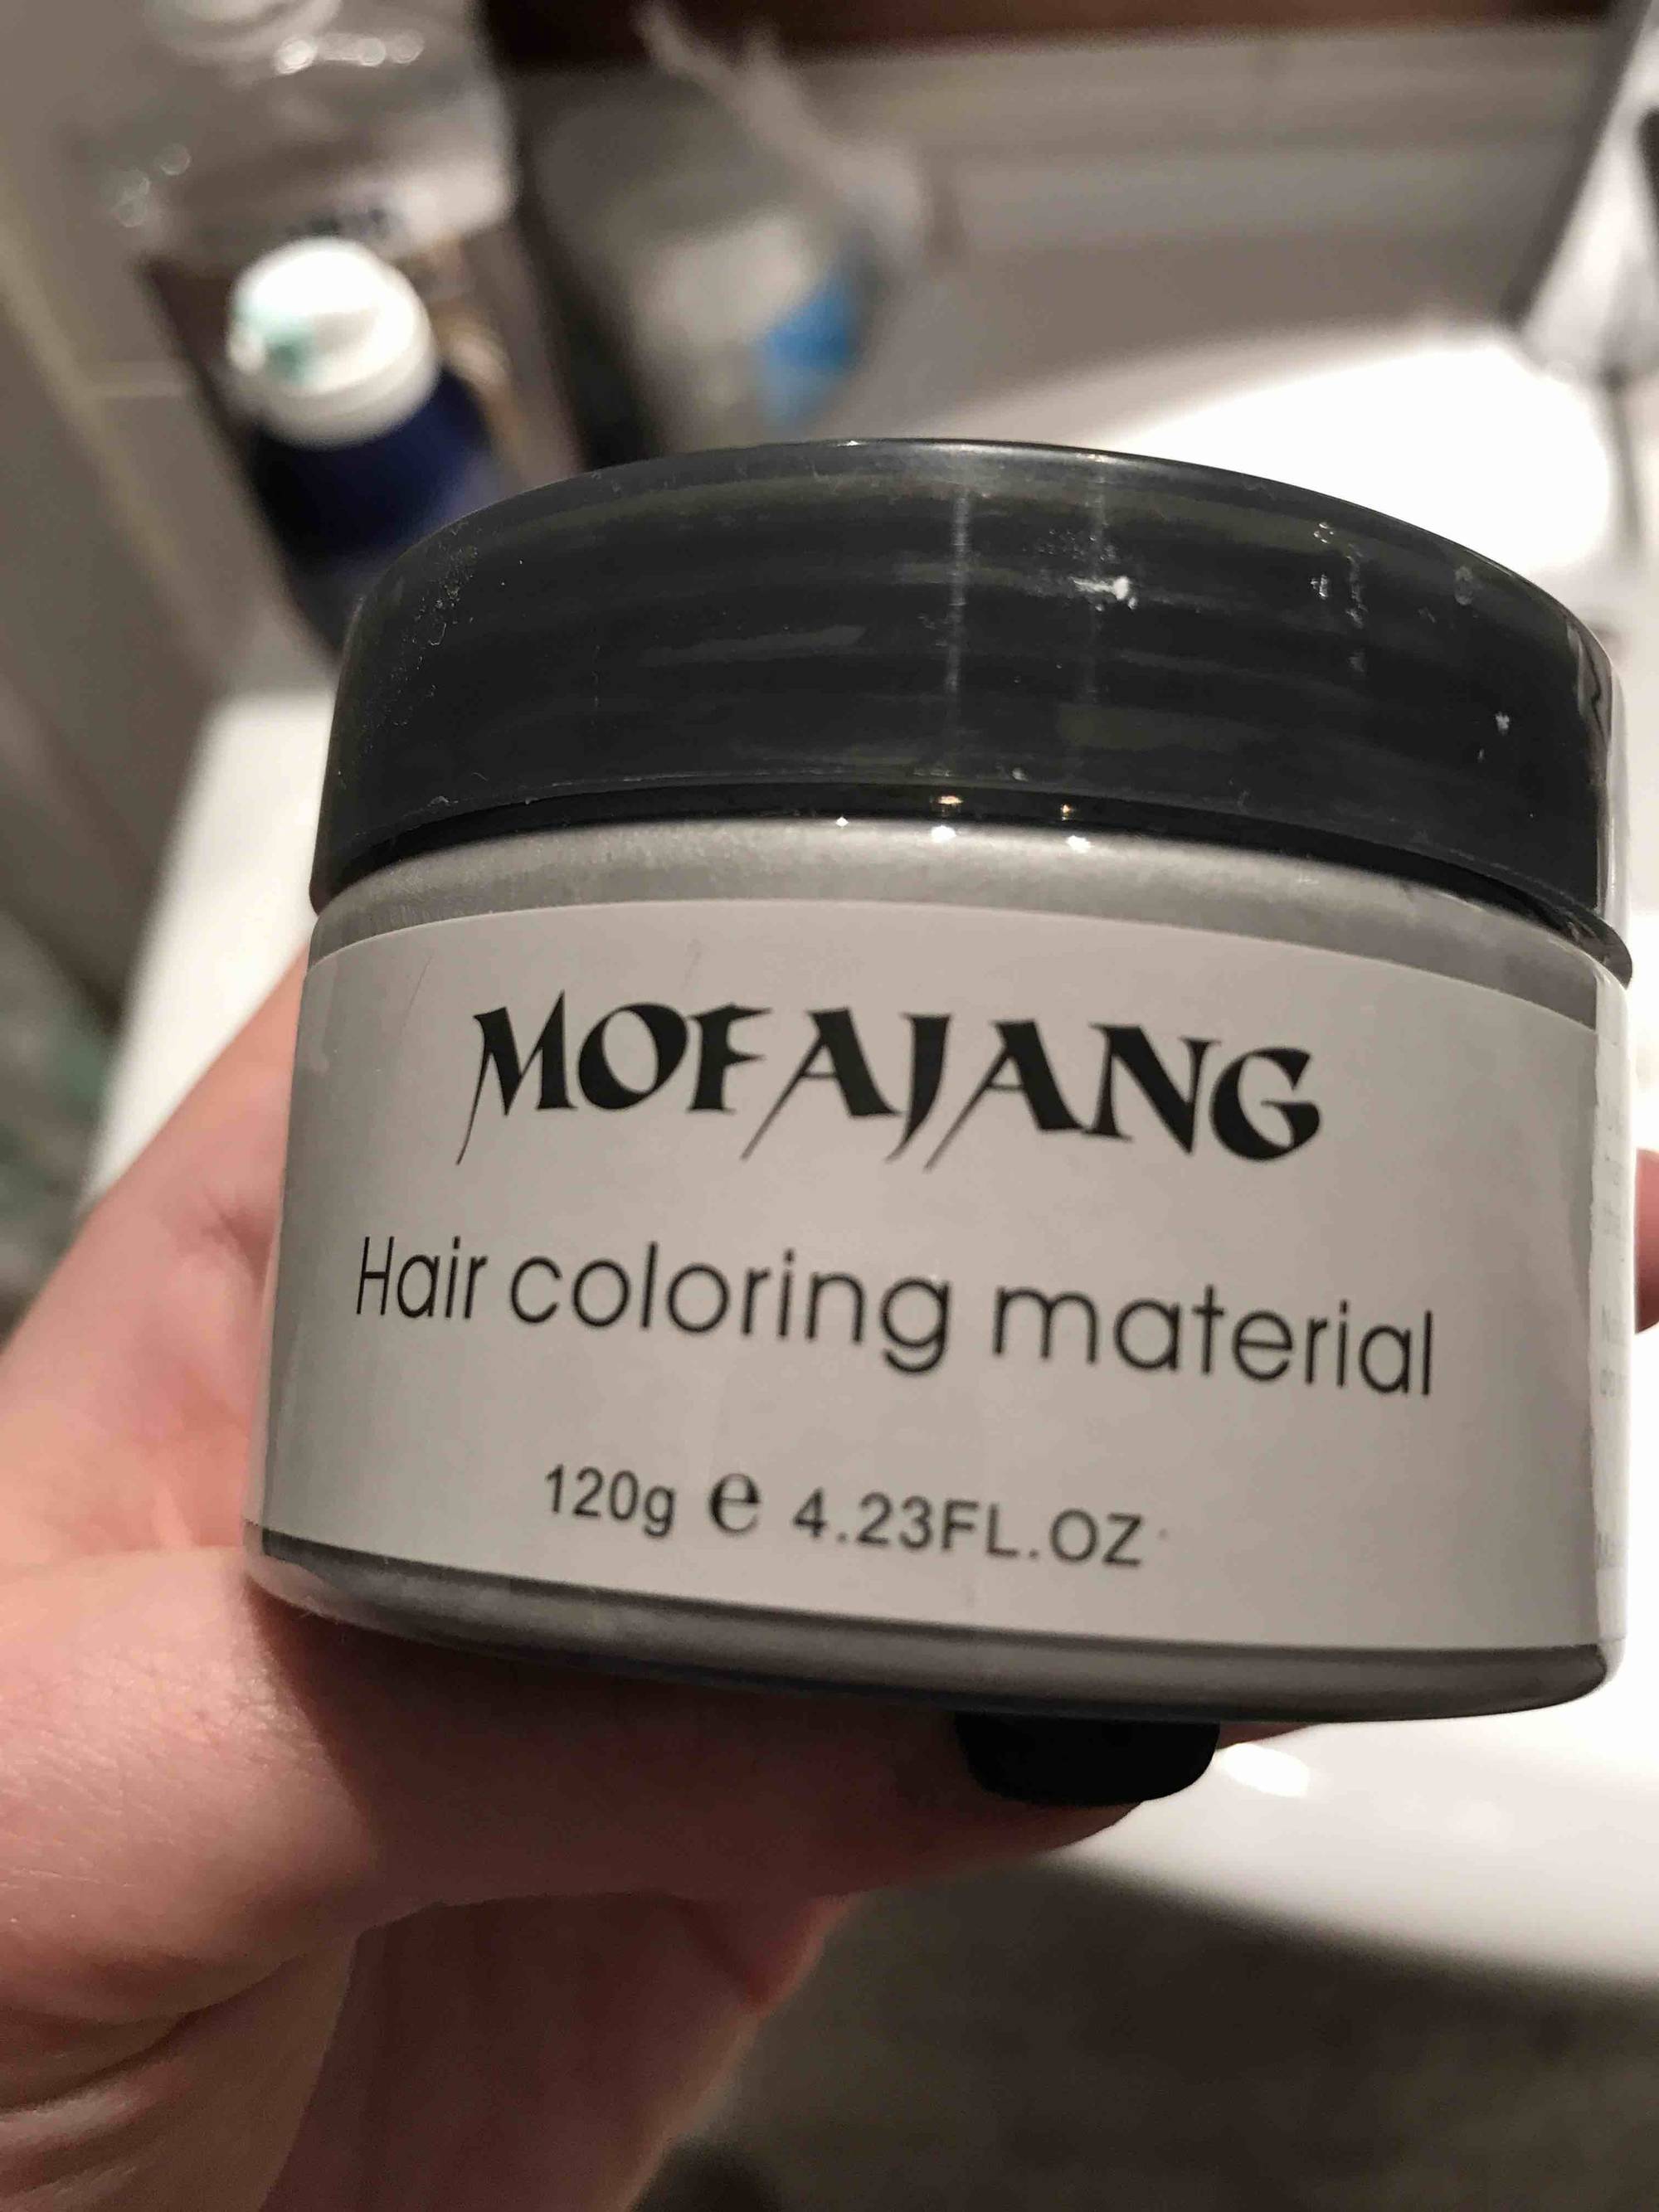 MOFAJANG - Hair coloring material